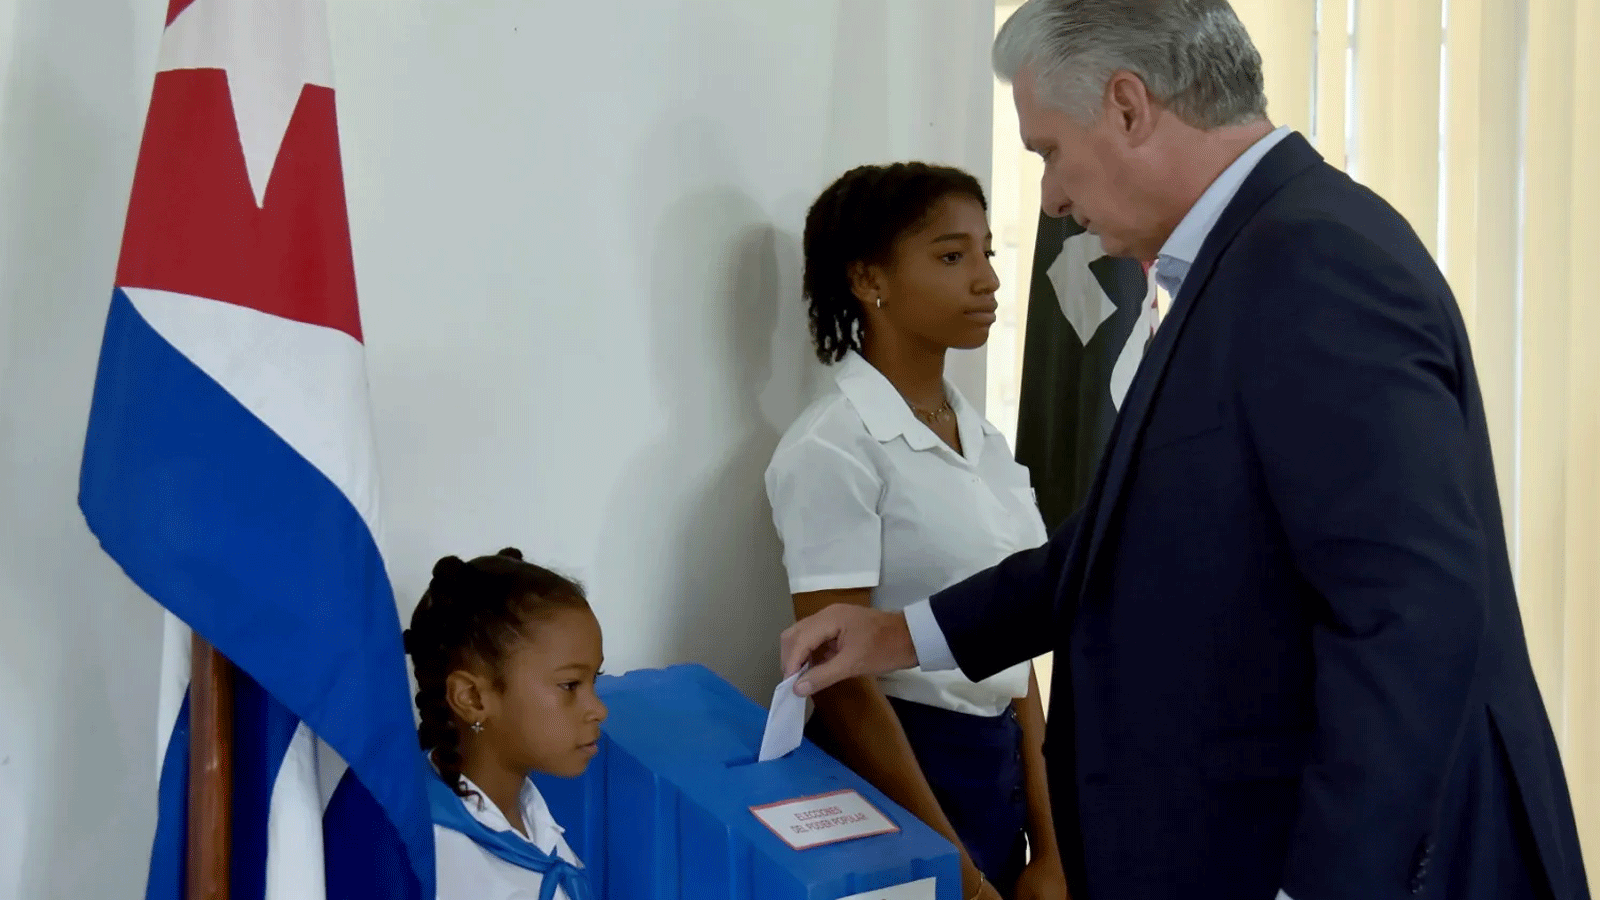  الكوبيون يصوتون في الانتخابات البلدية وسط أزمة اقتصادية خطيرة. هافانا 28 تشرين الثاني\ نوفمبر 2022.